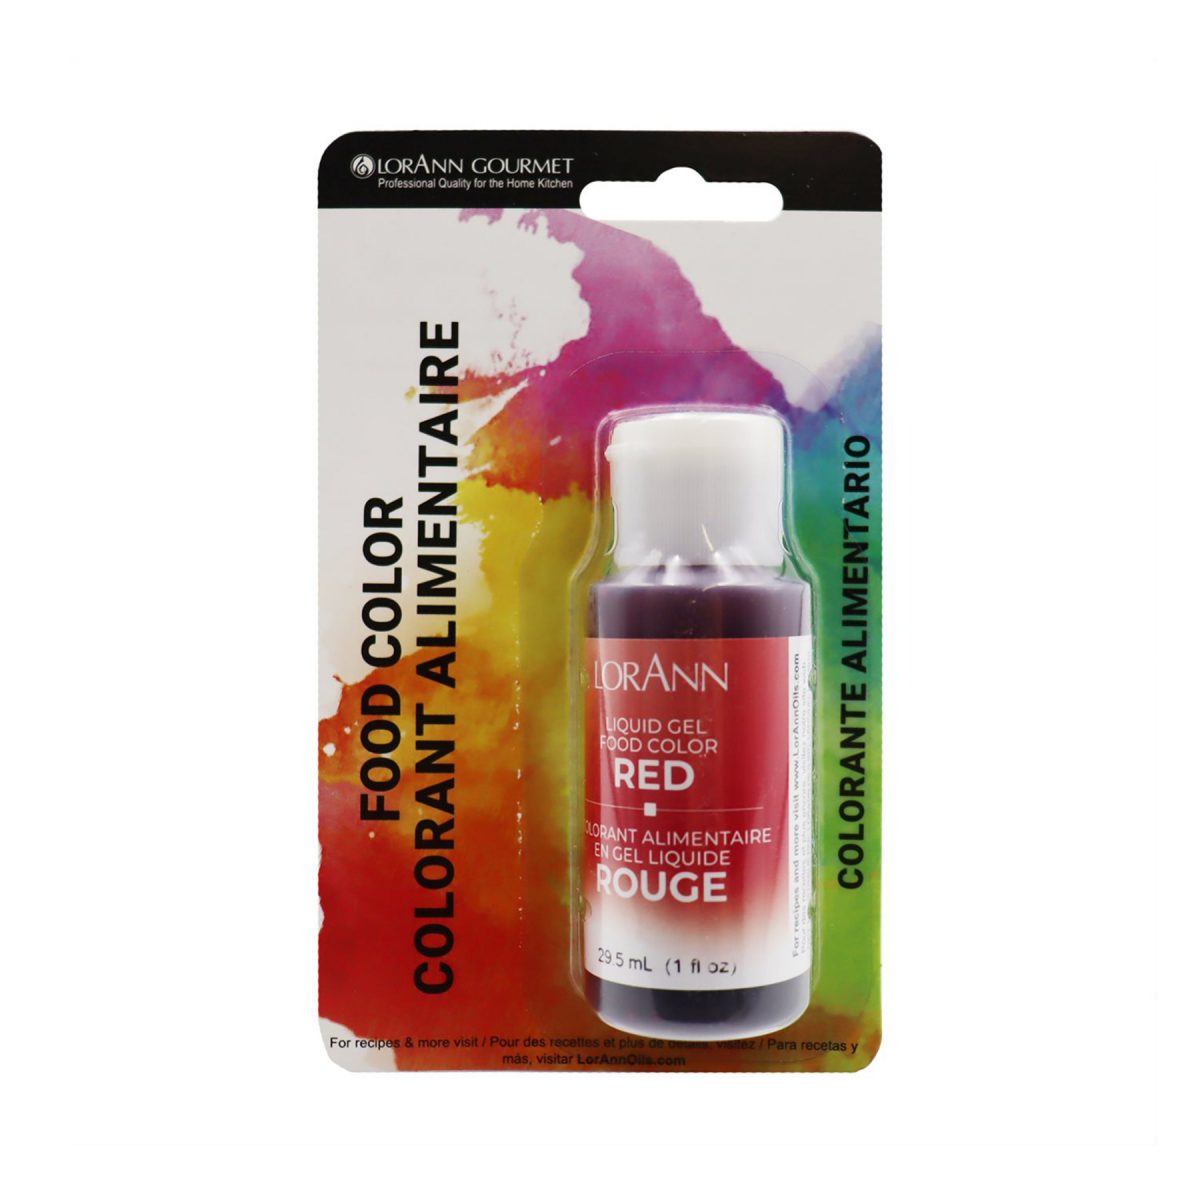 lorann-red-liquid-gel-colour-1oz-packaging